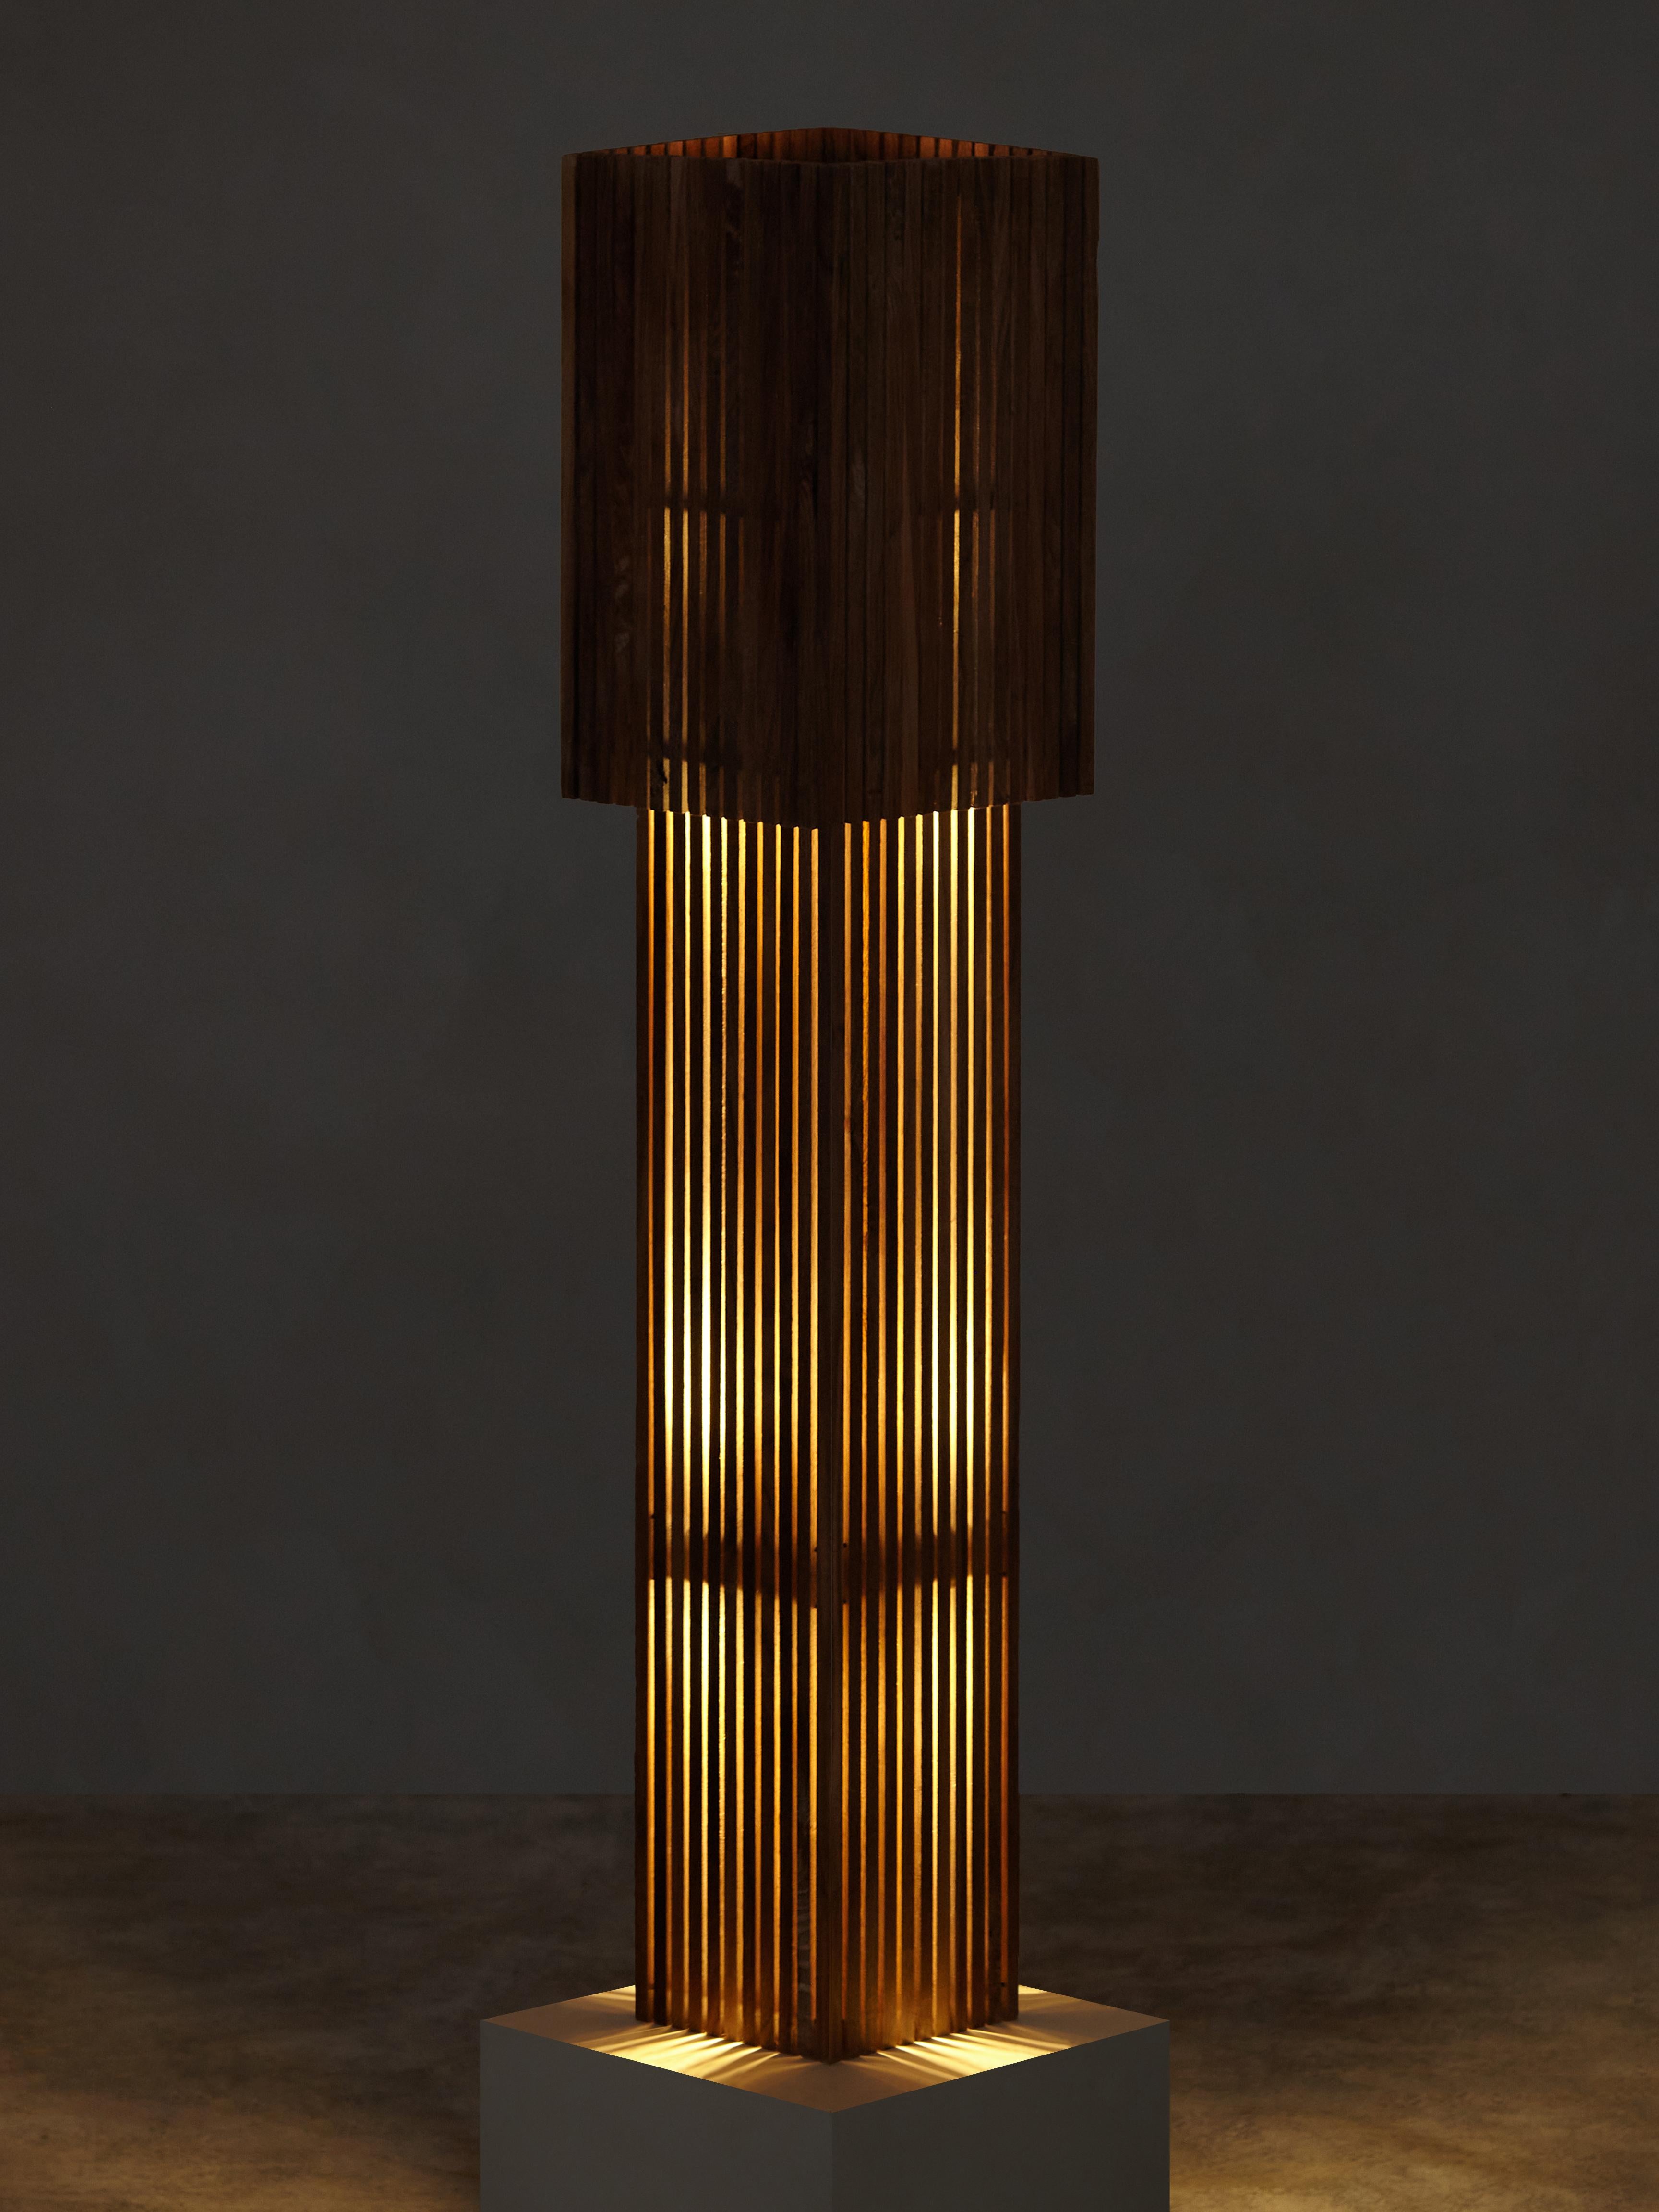 Des chevilles en bois brossé à la main bloquent et dirigent l'ampoule LED dissimulée de la lampe, projetant une lueur inégale à travers les bandes verticales du corps de la lampe. L'abat-jour amovible fonctionne comme un variateur manuel, permettant